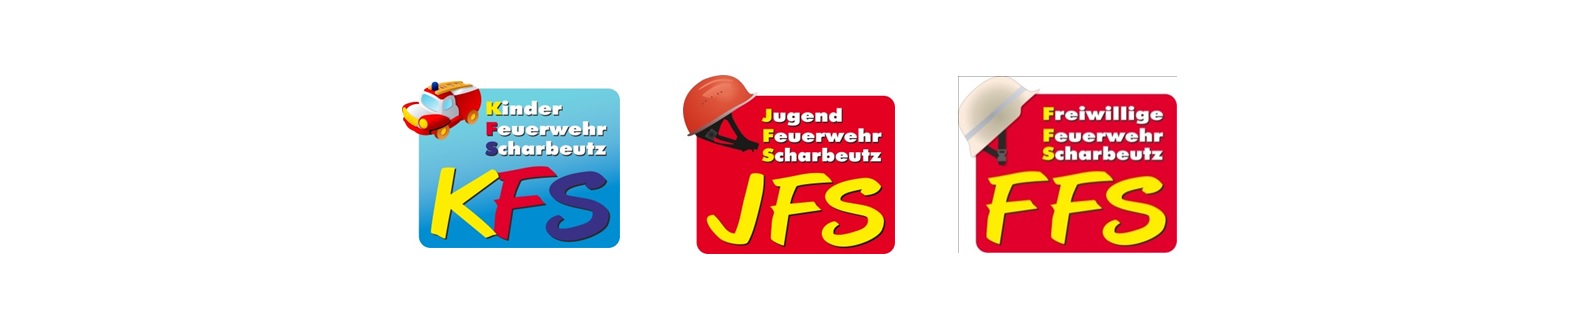 Scharbeutz Startseite FFS alle drei Logos